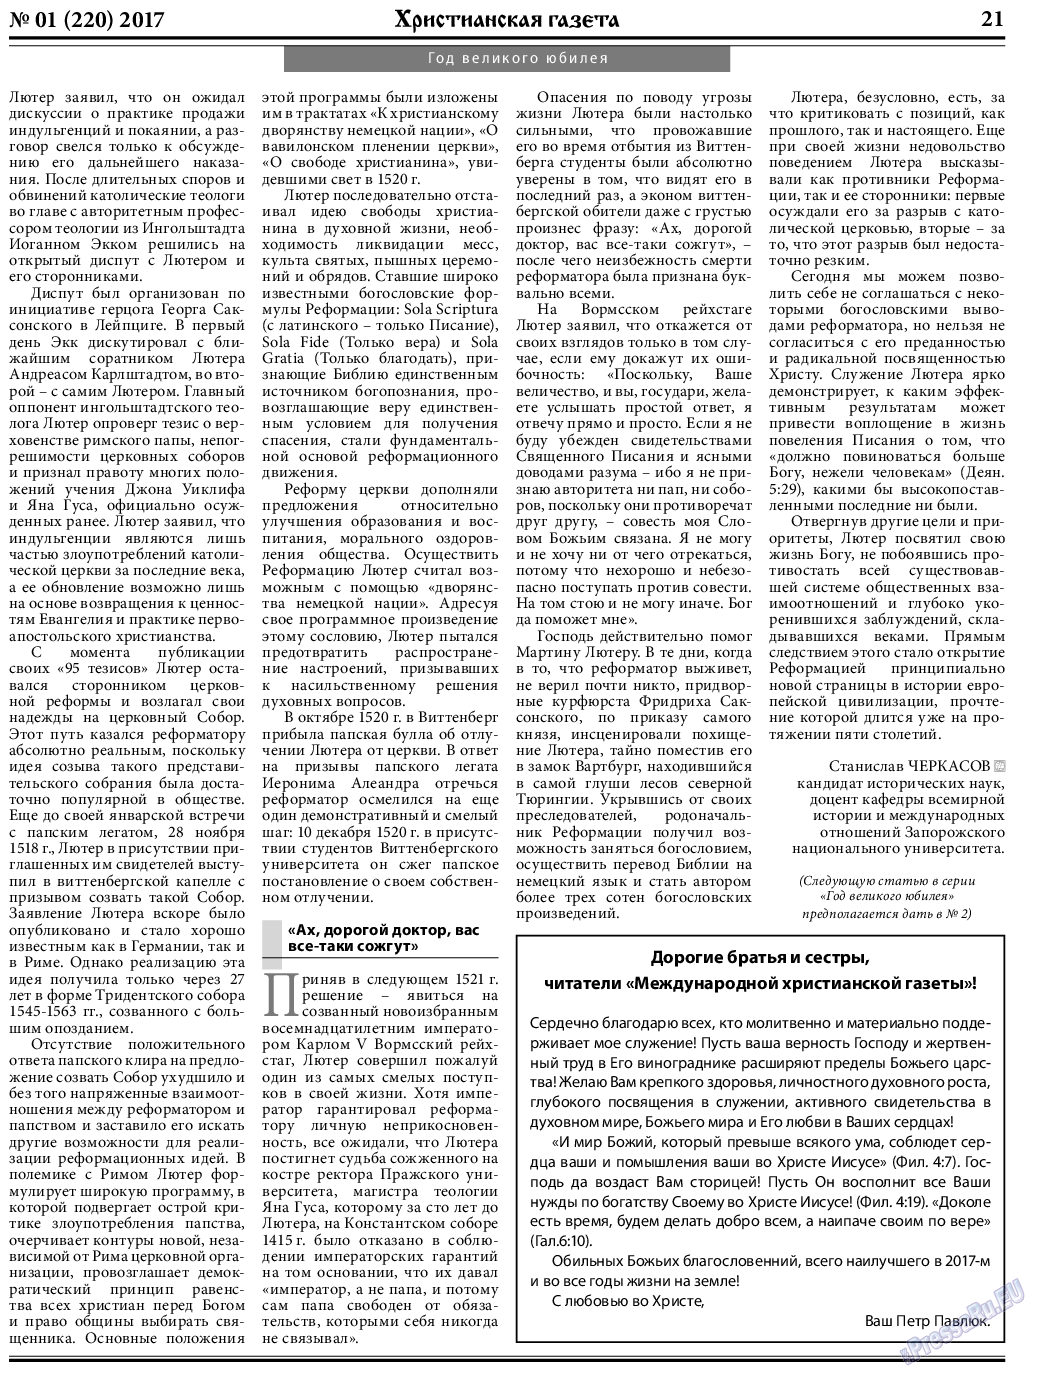 Христианская газета, газета. 2017 №1 стр.21